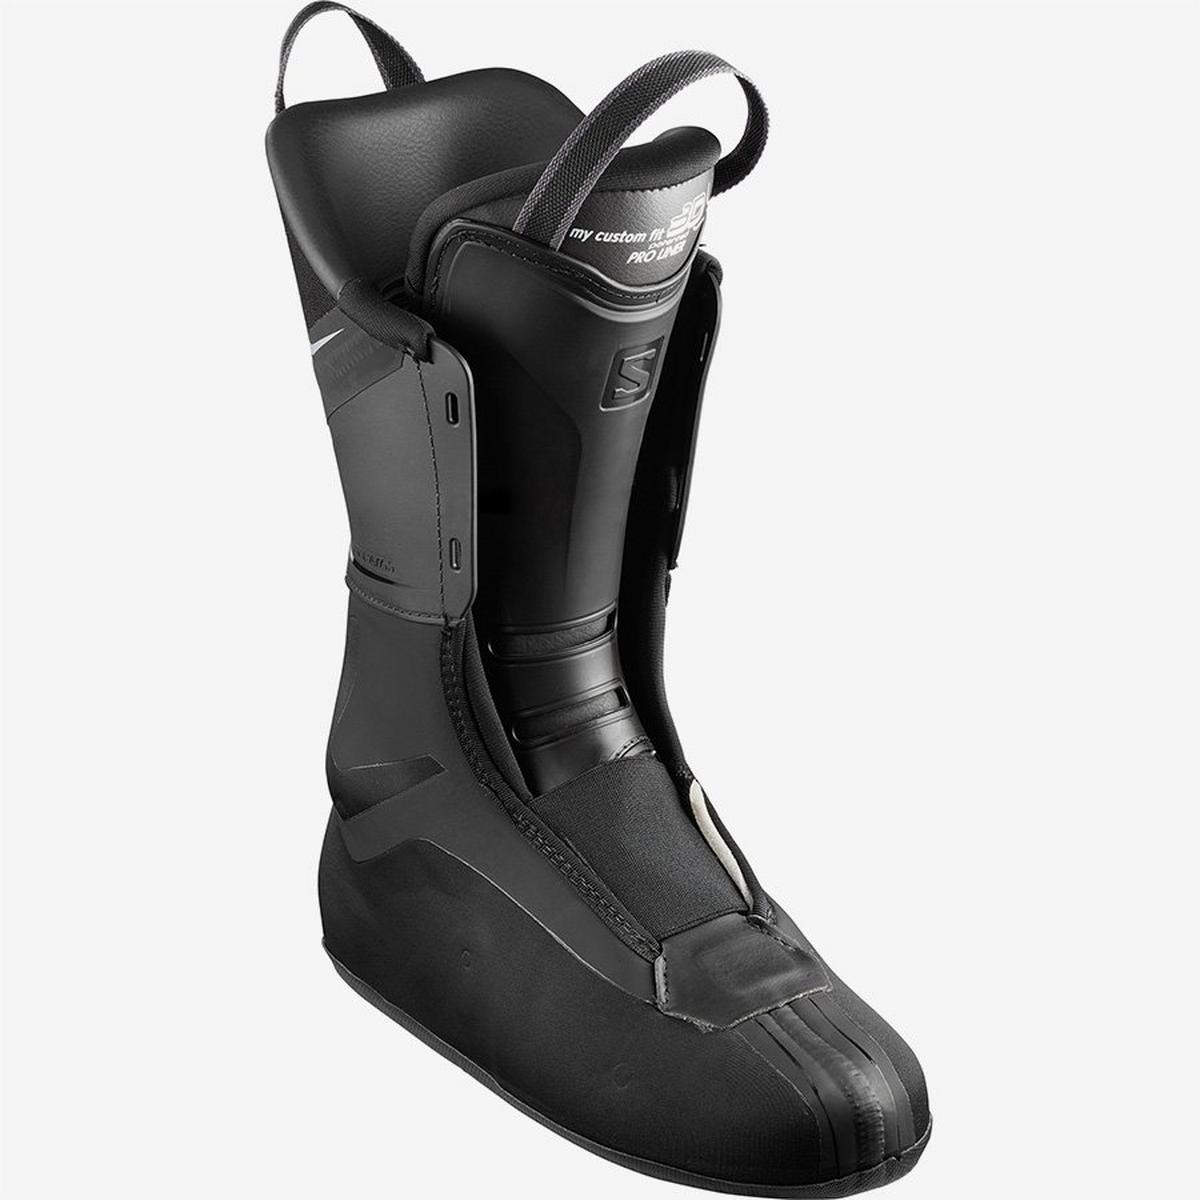 Salomon Women's S/MAX 110 Ski Boot - Black